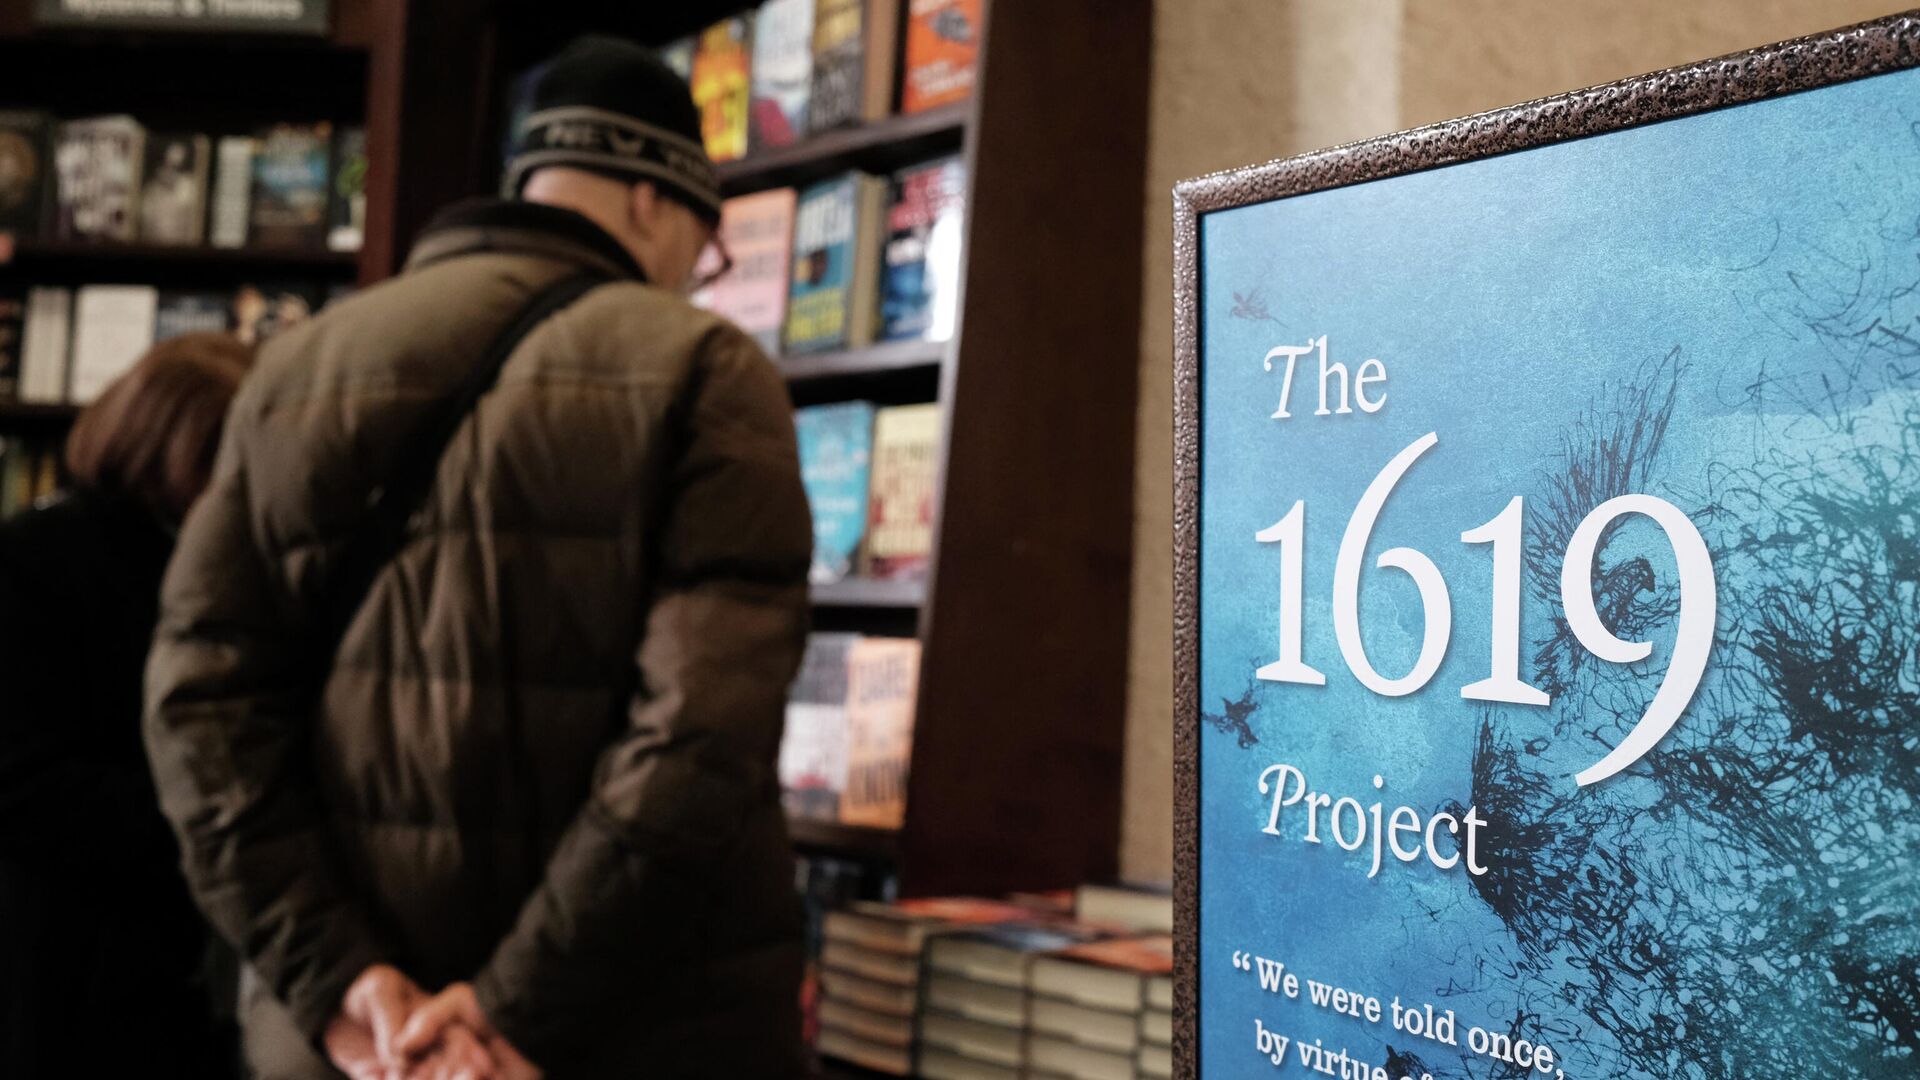 Книга Проект 1619 в книжном магазине Нью-Йорка  - РИА Новости, 1920, 02.09.2022